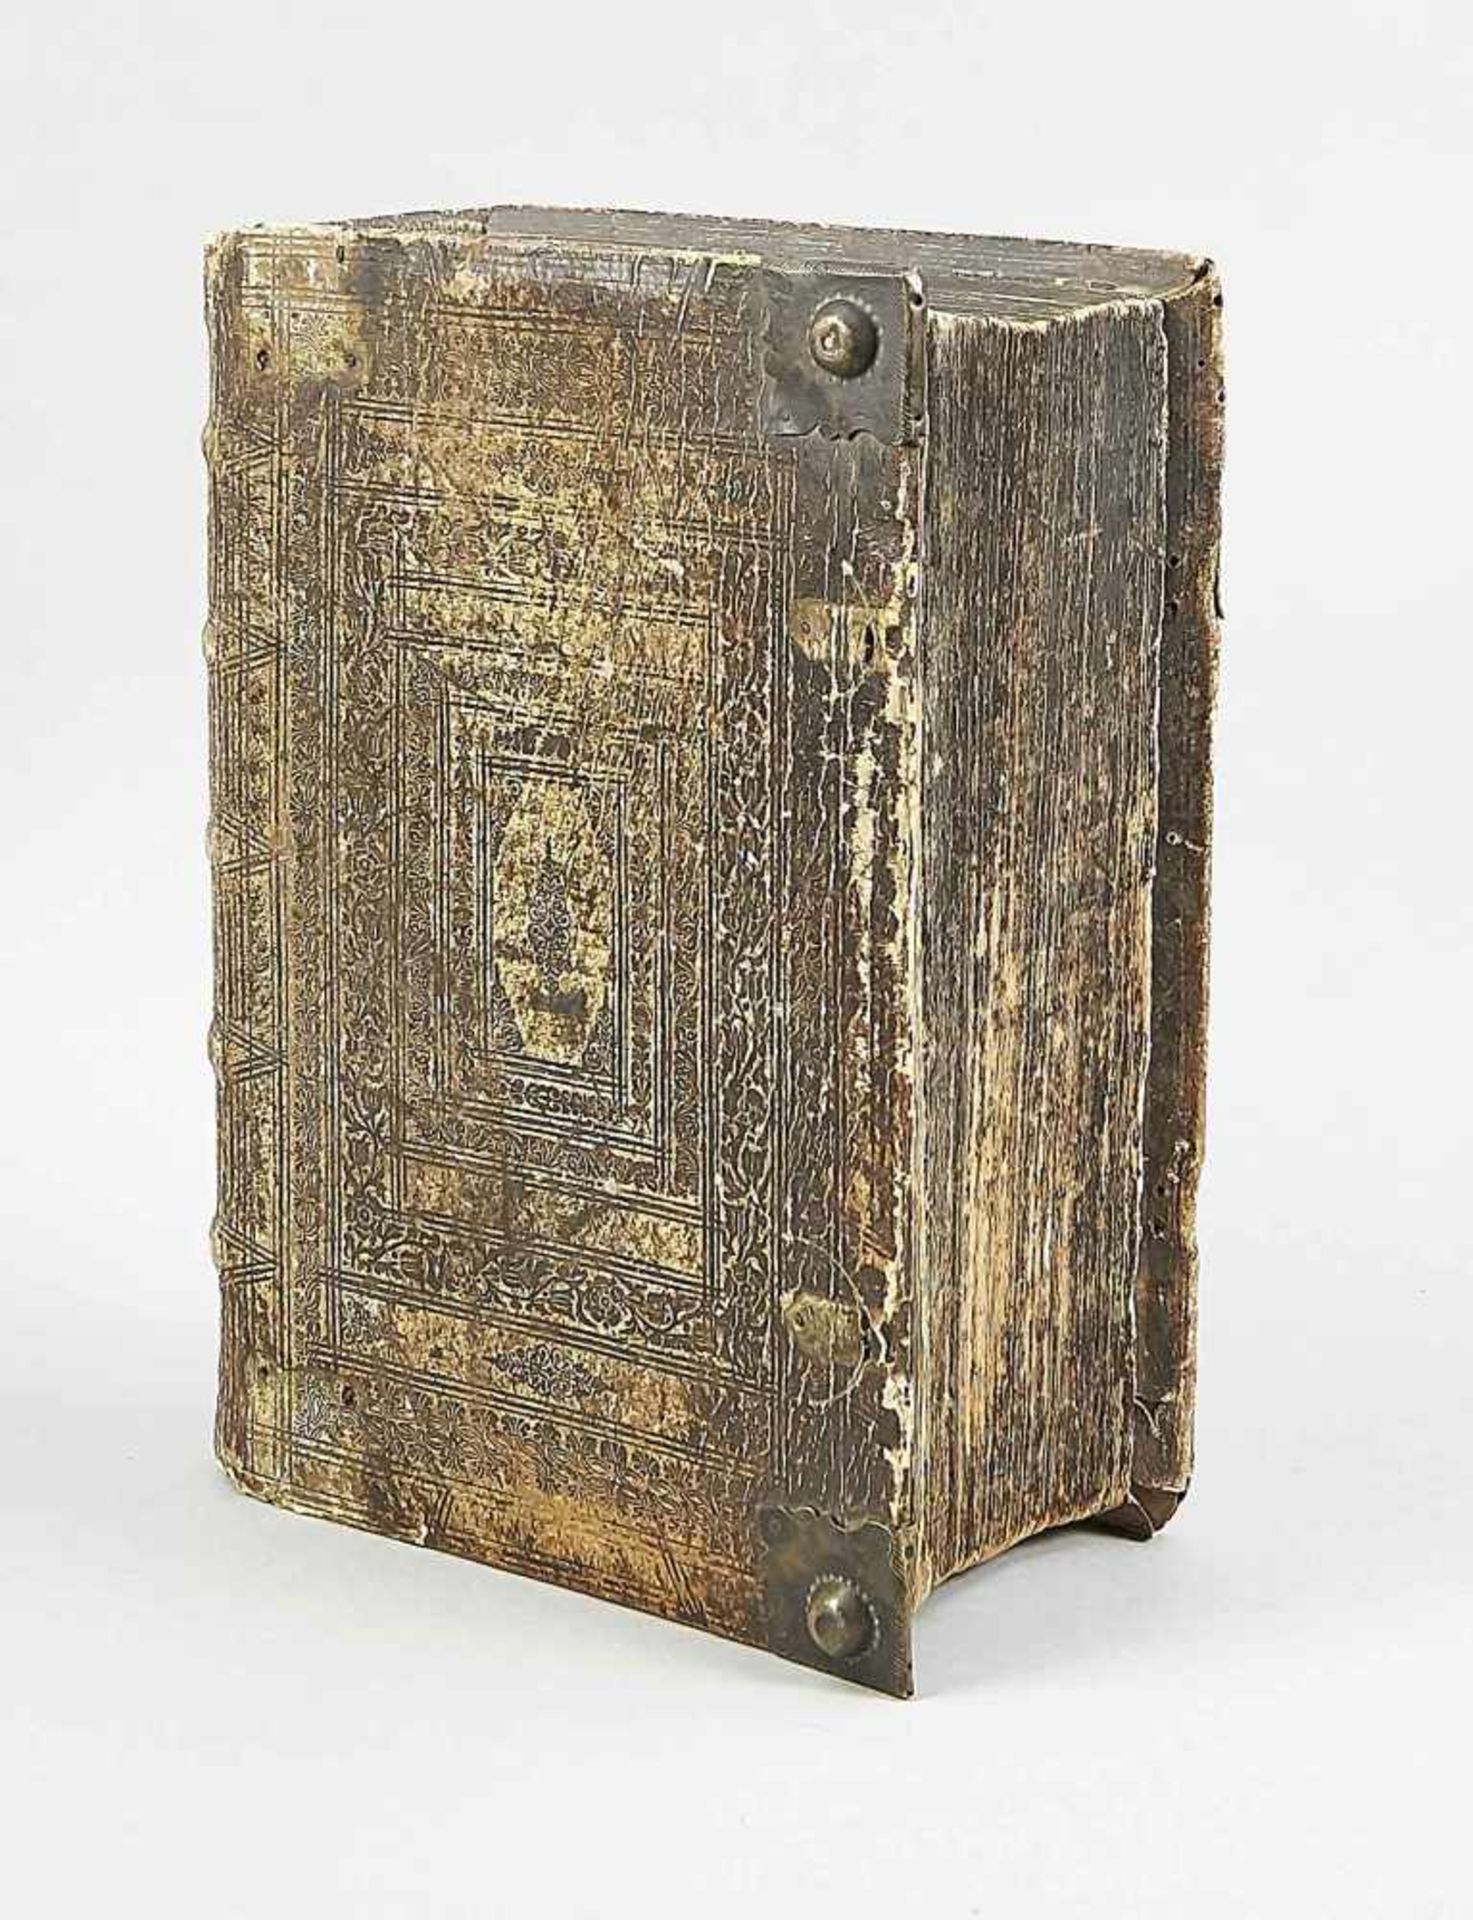 Bibel aus demm Jahr 1700, Nürnberg. Verlegt von Johann Andrea Endters & Söhne.Schweinsleder-